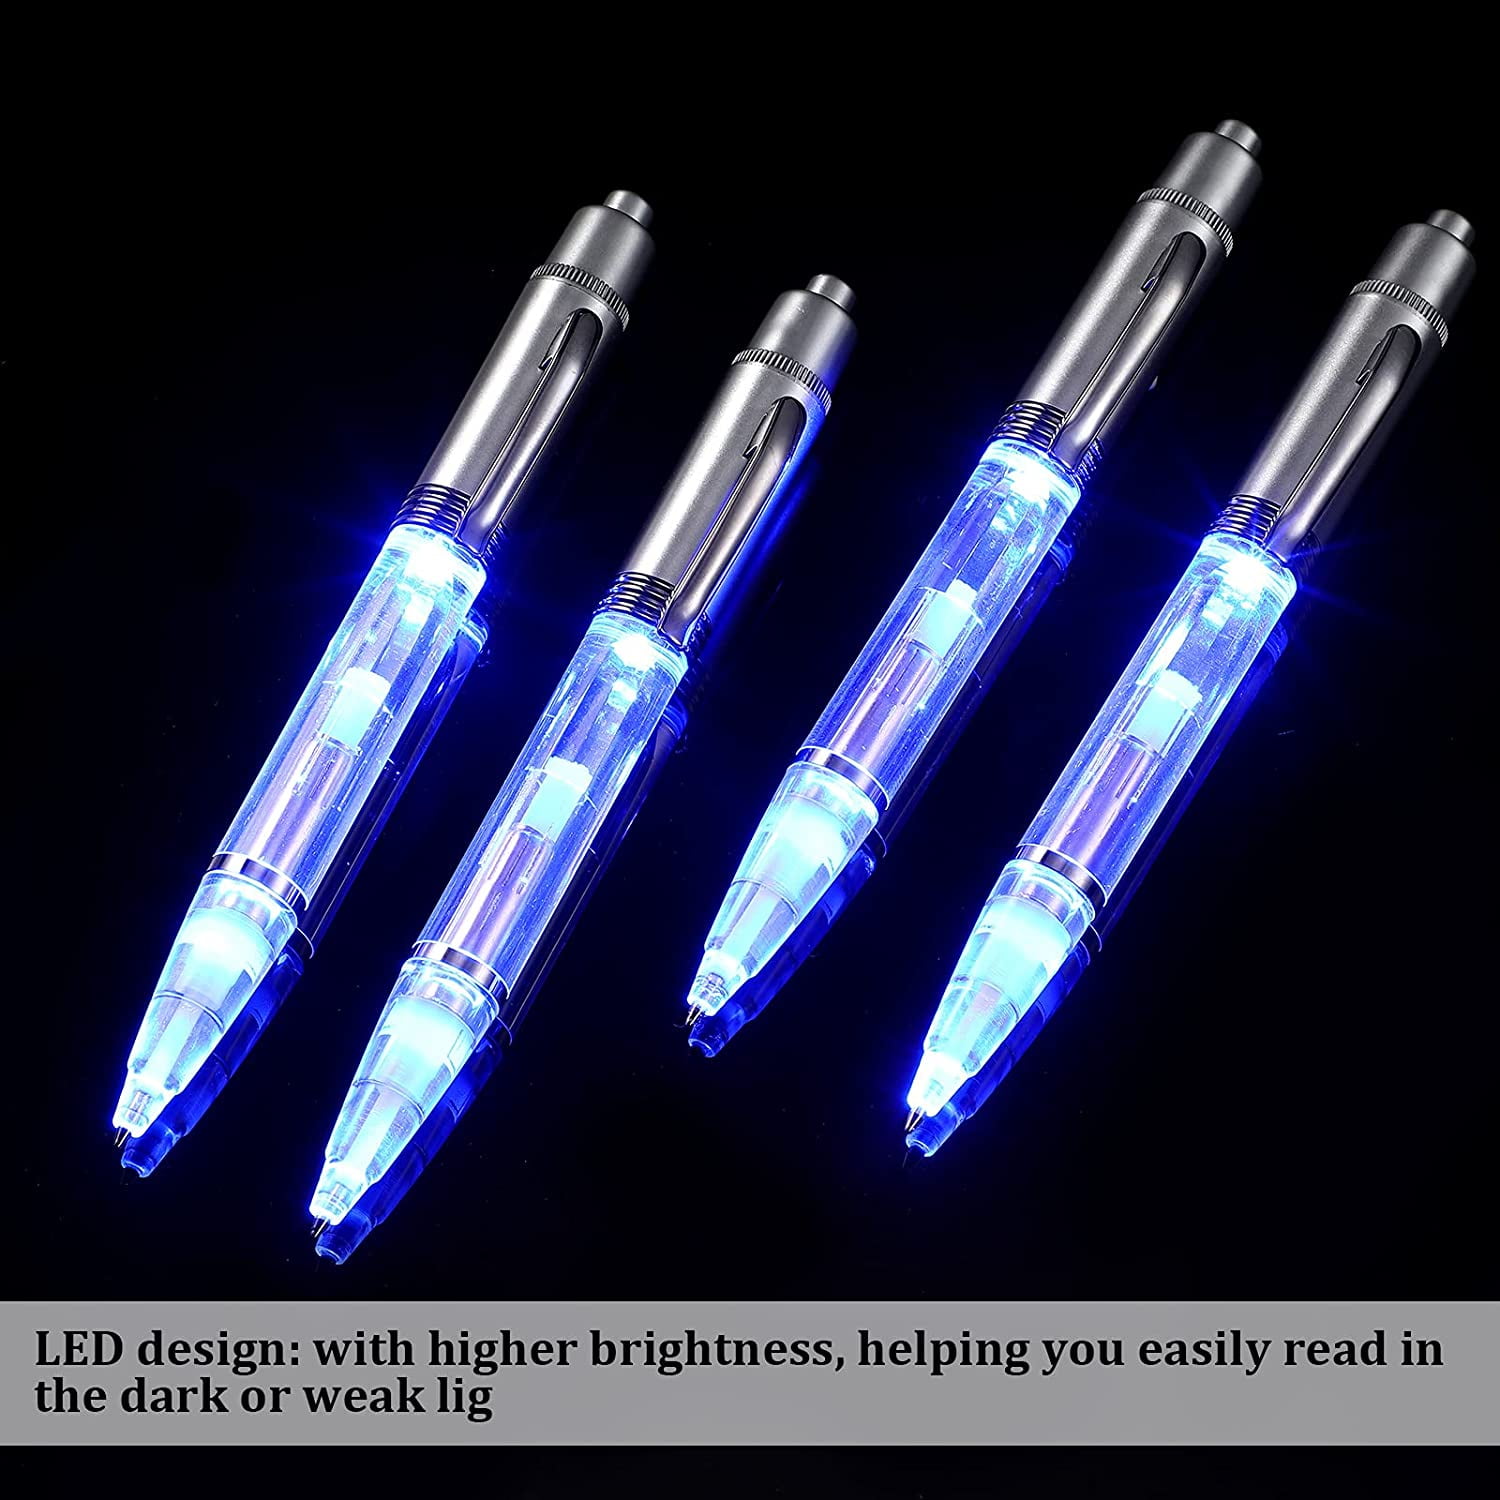 LED Penlight Light Up Ballpoint Writing inDark 4 Lighted Tip Pen Pack-White 